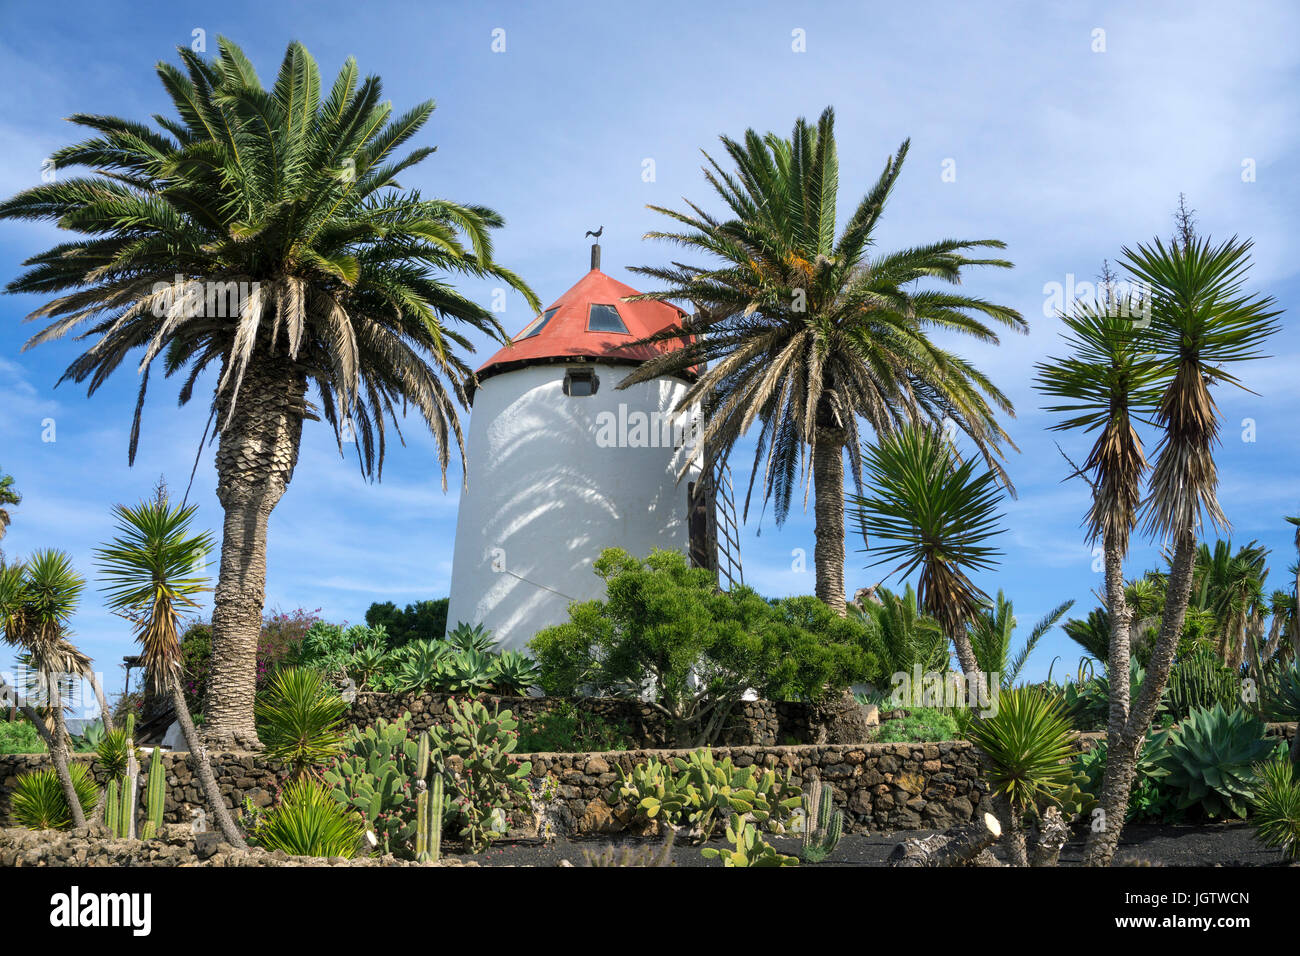 El molino de viento en el museo de agricultura Museo Agrícola El Patio, provincia Tiagua, Teguise, Lanzarote, Islas Canarias, Europa Foto de stock